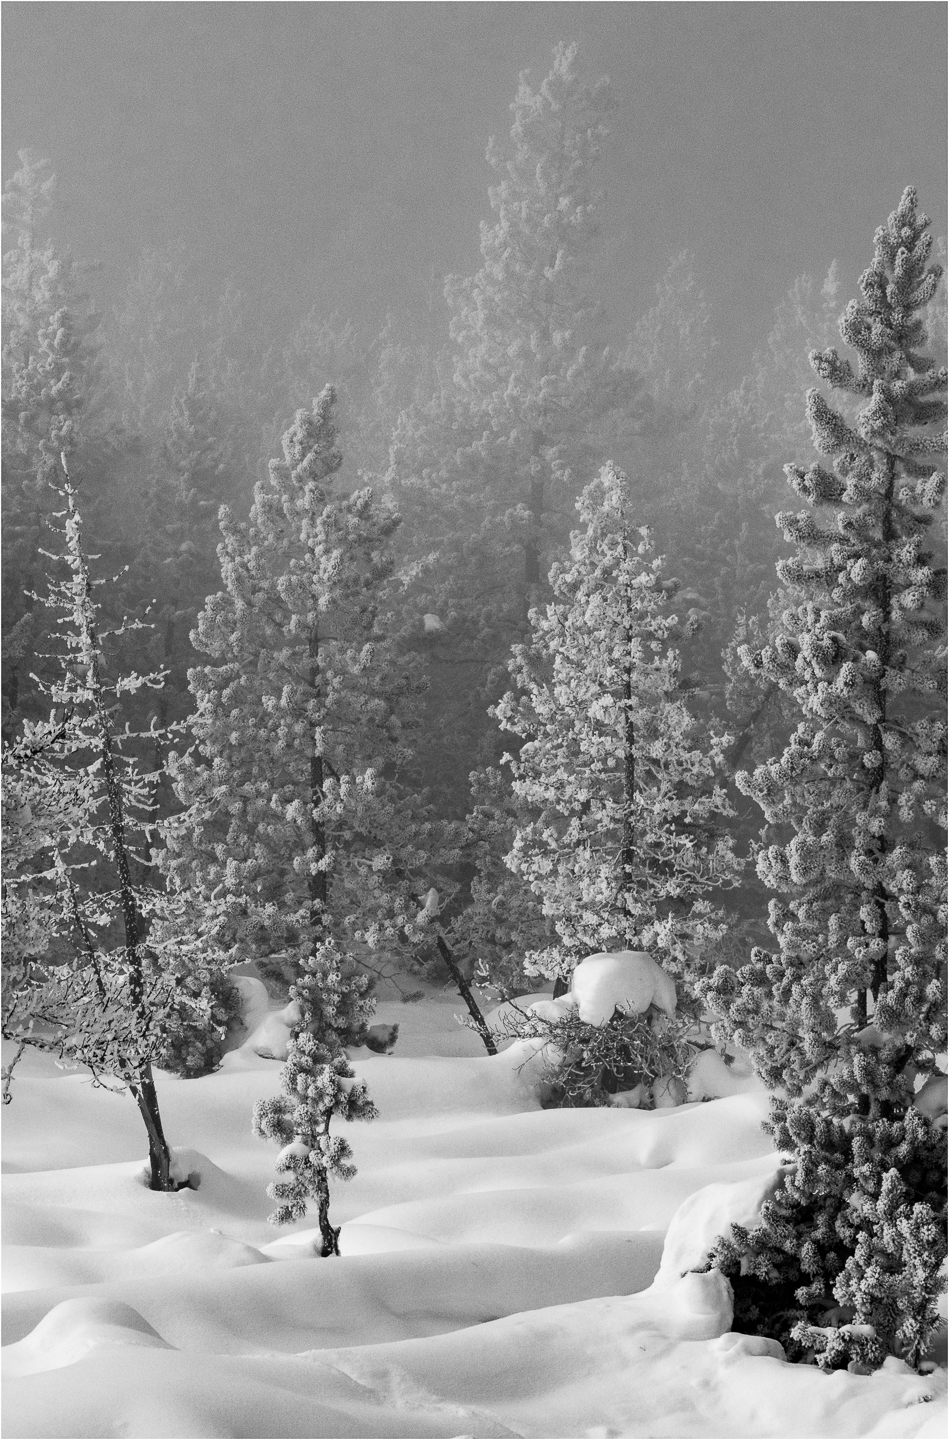 3rd PrizeOpen Mono In Class 3 By John Hoyt For Snowy Landscape FEB-2022.jpg